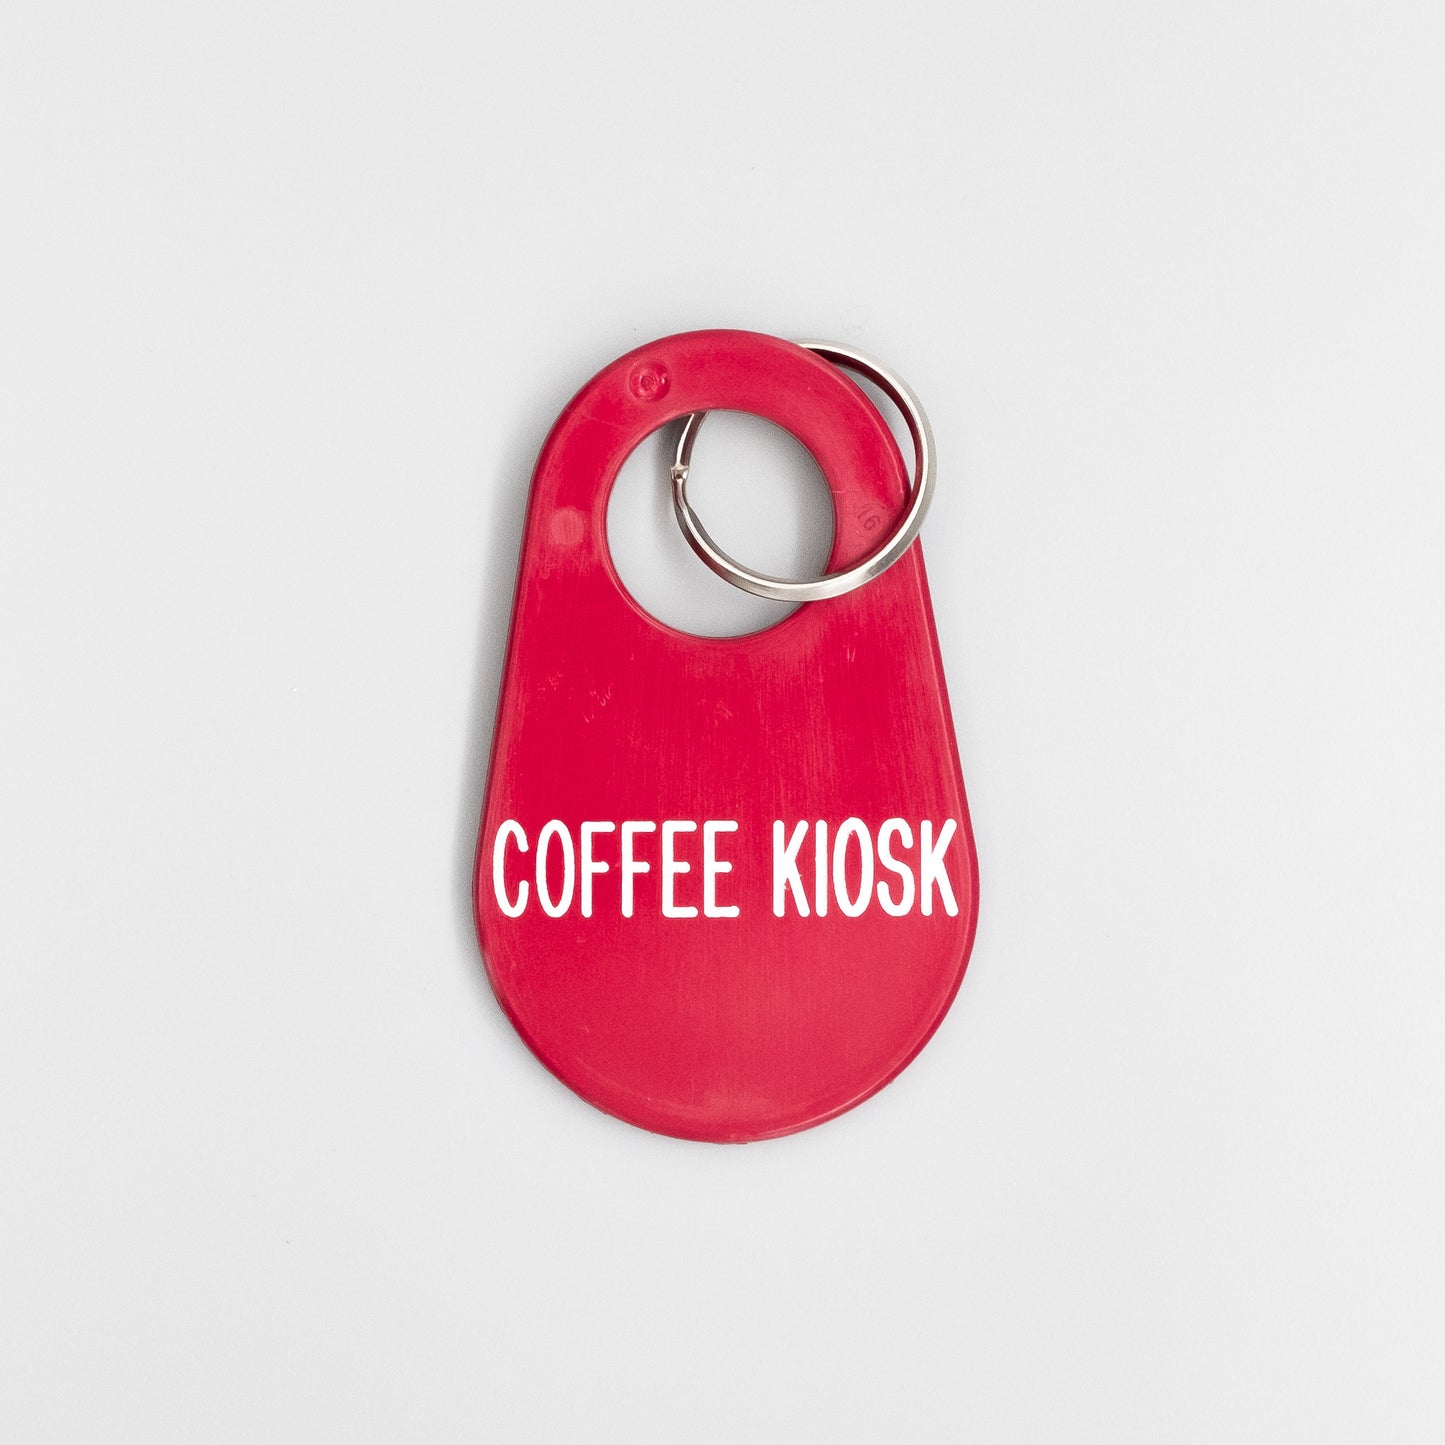 プラスチックキーホルダーA(coffeekiosk) - BE A GOOD NEIGHBOR COFFEE KIOSK